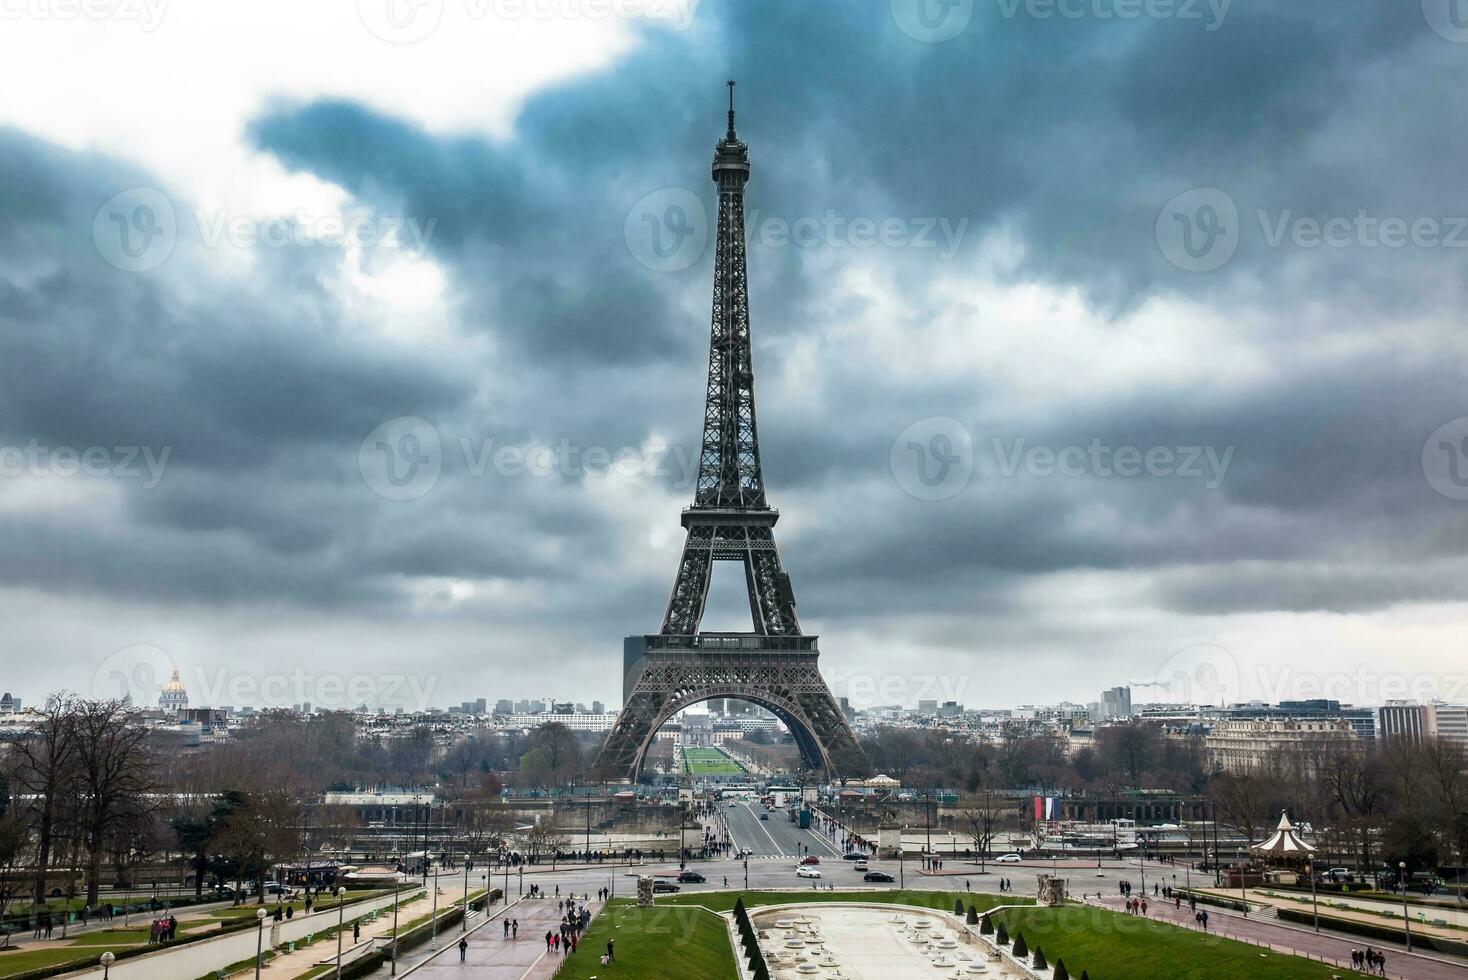 das berühmt Tour Eiffel beim das Ende von Winter unter Sturm Wolken foto